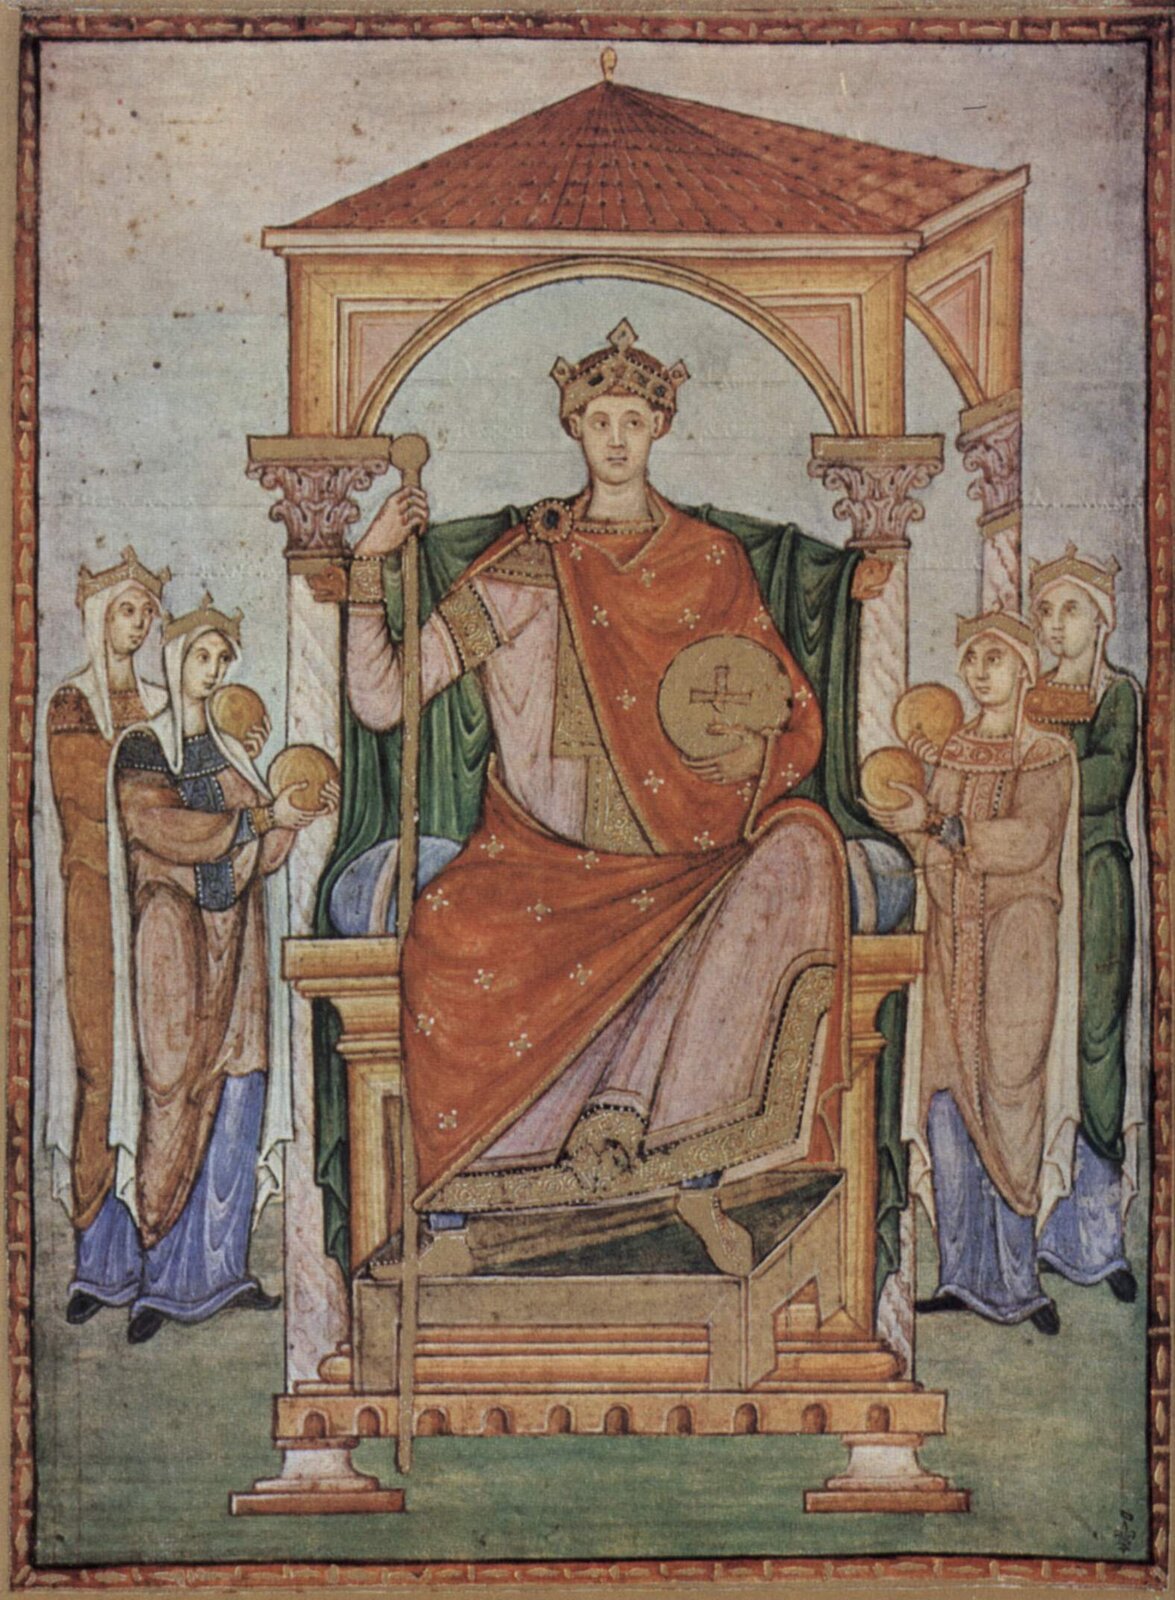 Miniatura, przedstawiająca cesarza Ottona III na tronie, z berłem w prawej dłoni i jabłkiem z krzyżem greckim wpisanym w okrąg w lewej dłoni. Cesarz nosi na głowie diadem cesarski. Tron usadowiony jest pod zadaszeniem z widoczną kolumnadą i wykończeniem filarów w porządku korynckim. Po obu stronach cesarza kobiety, odziane w szaty z diademami na głowach, trzymają w dłoniach złote monety, niesione w darze cesarzowi. Ilustracja z epoki. 